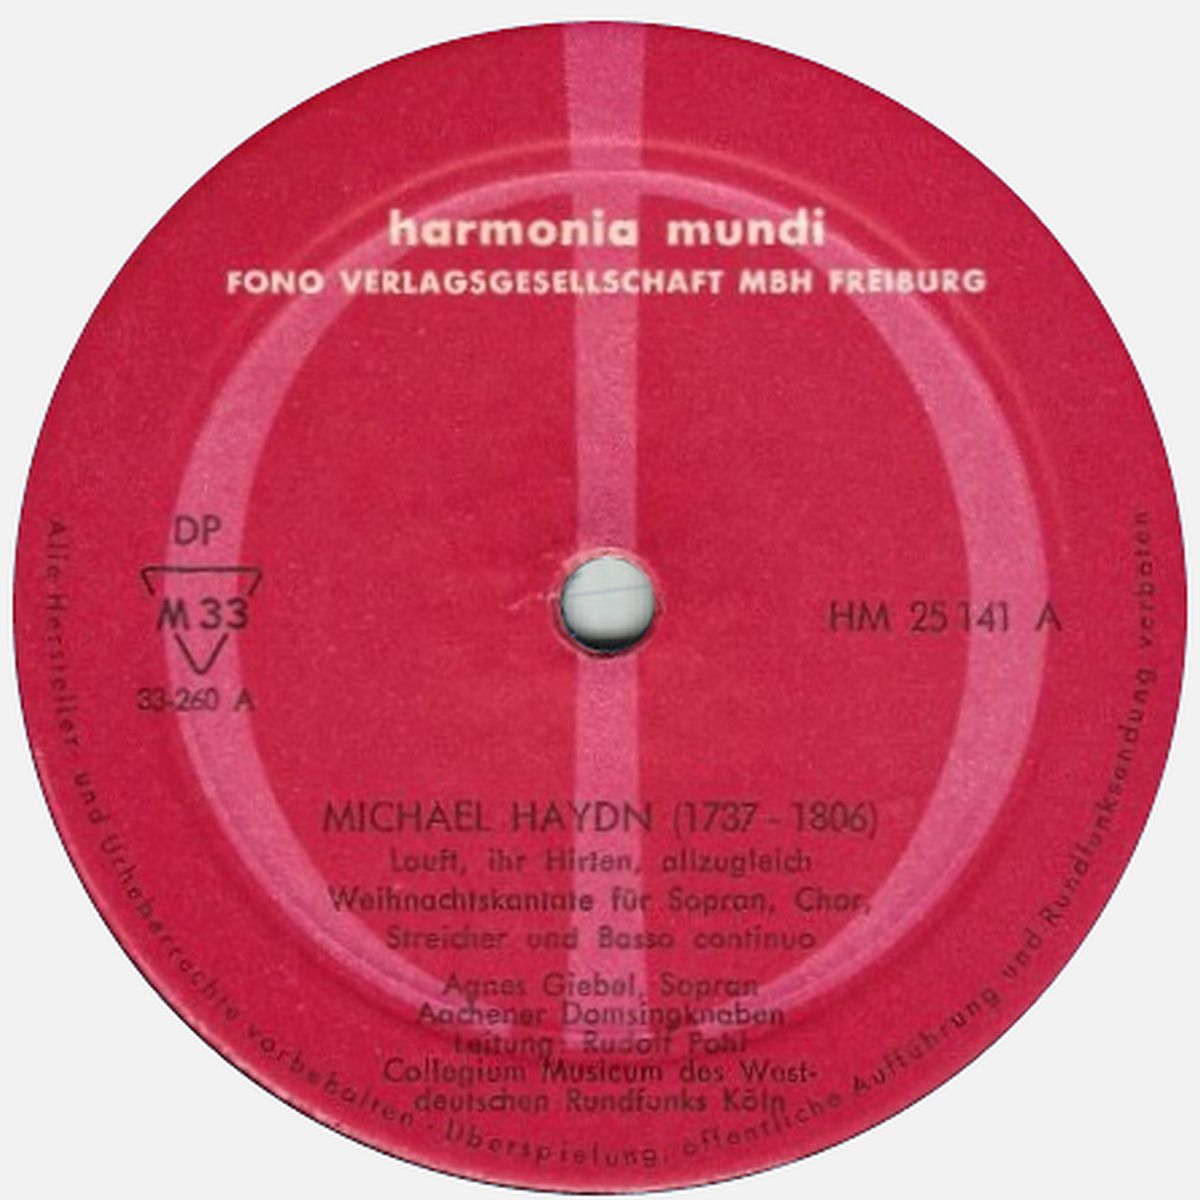 Étiquette du disque Harmonia Mundi HM 25 141, cliquer pour une vue agrandie